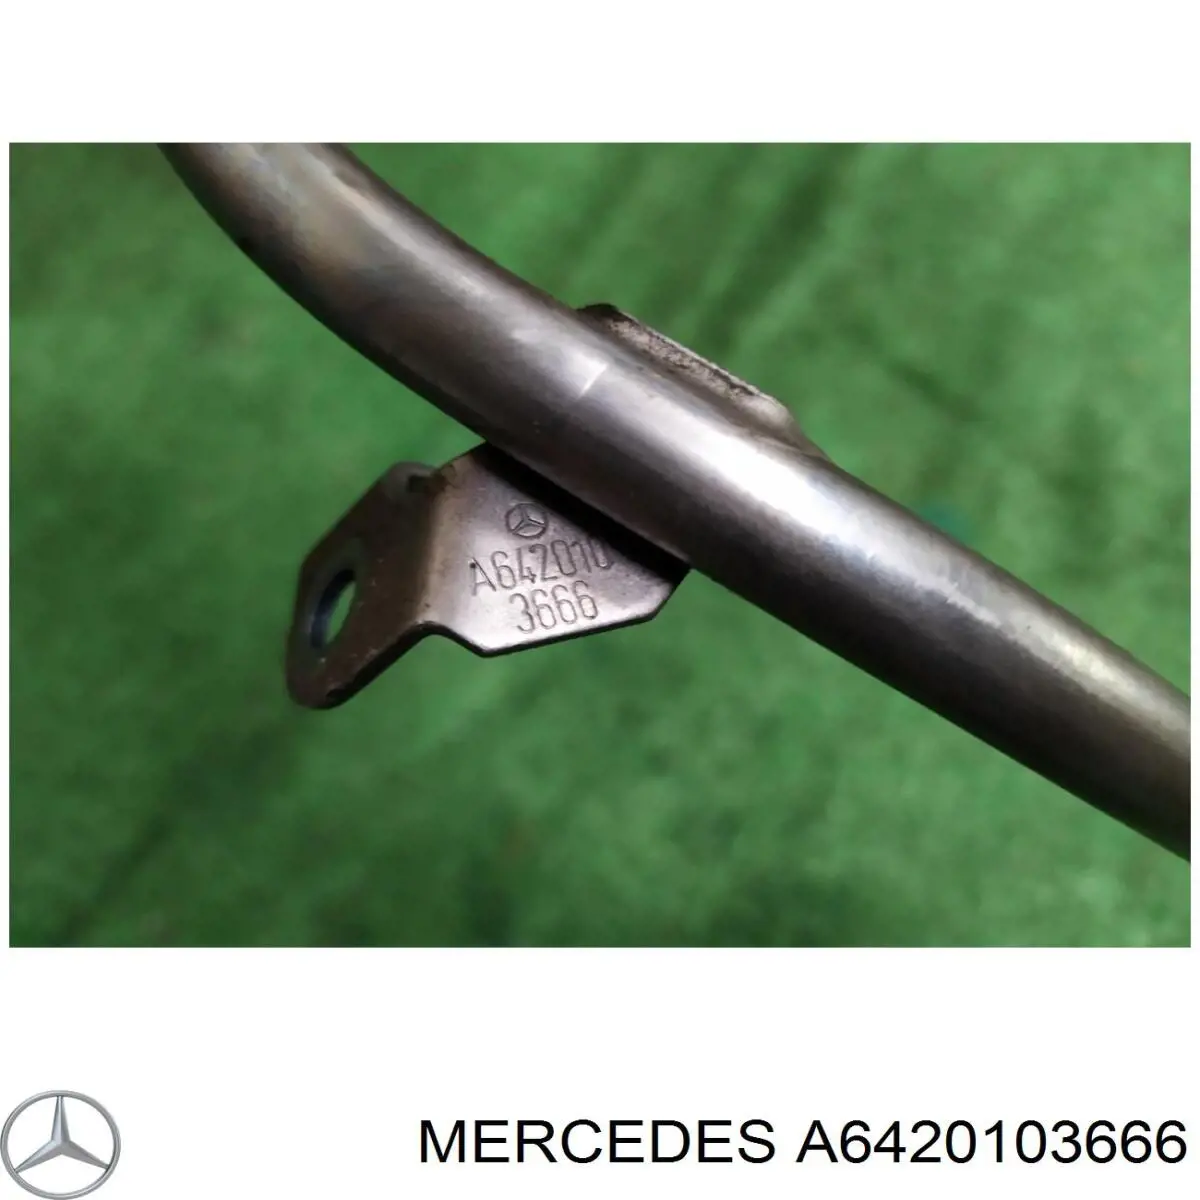 6420103766 Mercedes направляюча щупа-індикатора рівня масла в двигуні